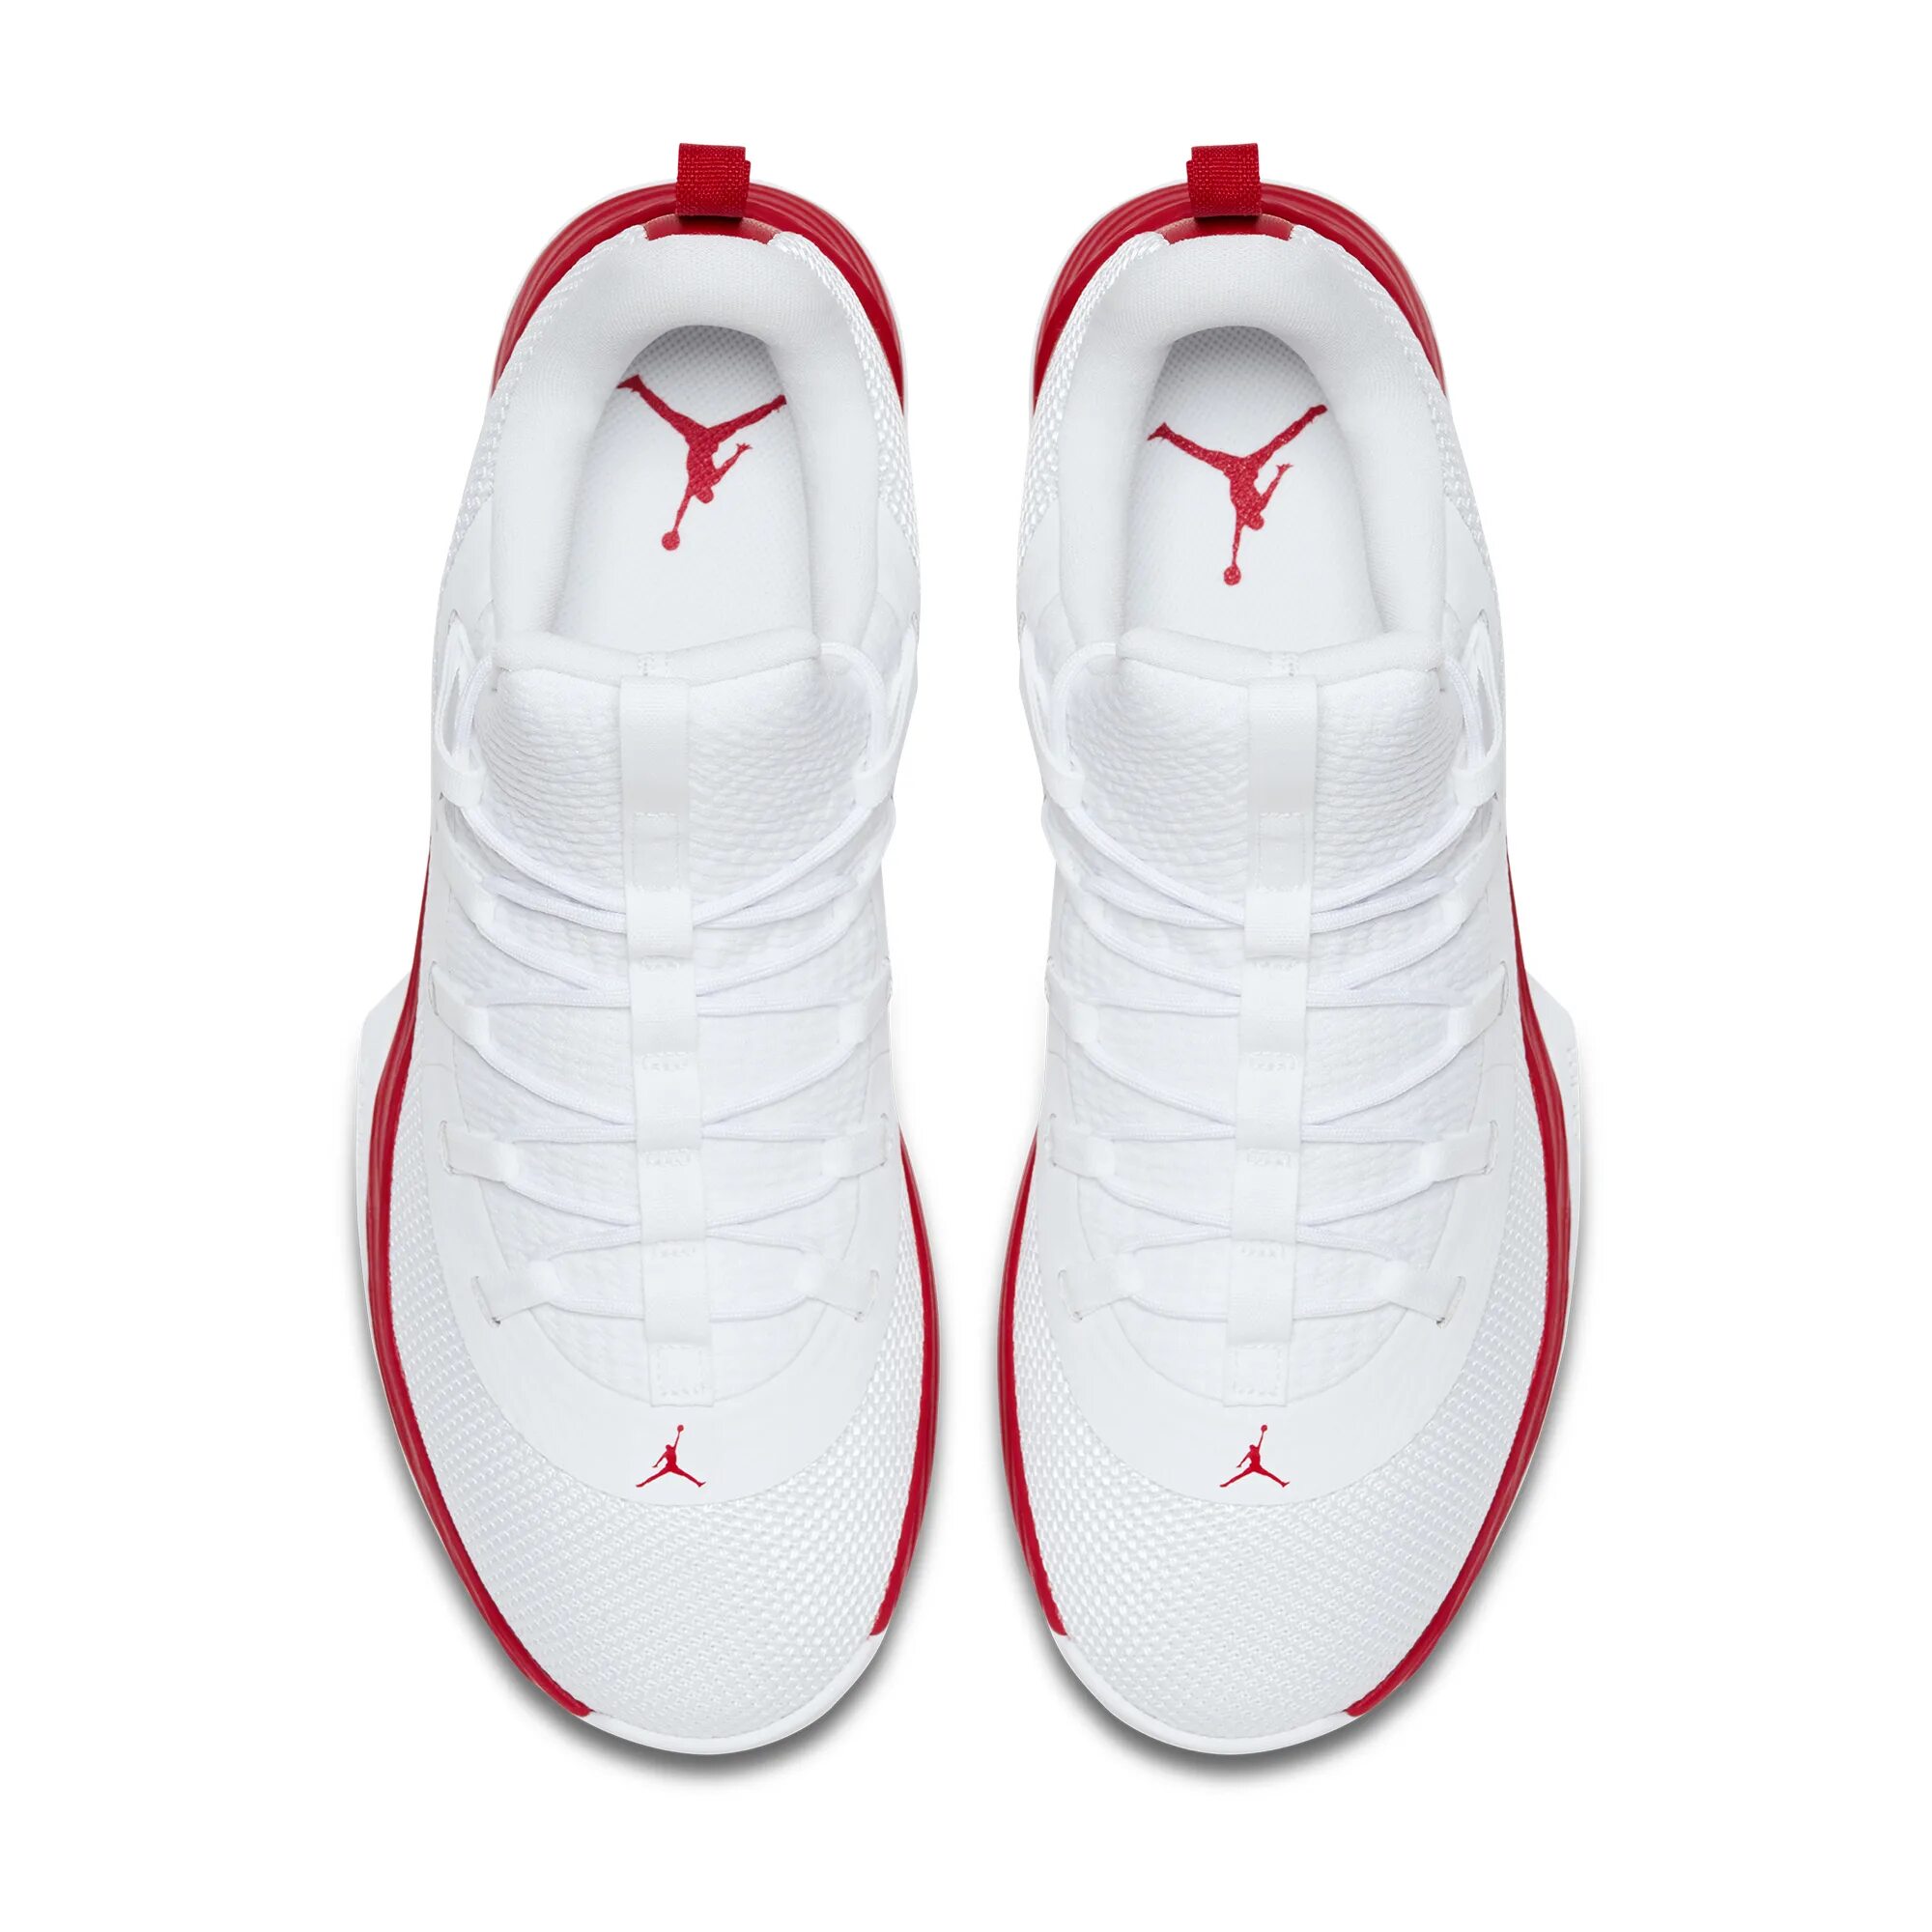 Кроссовки Jordan Fly 2. Jordan Air Fly кроссовки. Nike Air Jordan Ultra Fly 5. Баскетбольные кроссовки Nike Air Jordan Ultra Fly 2..